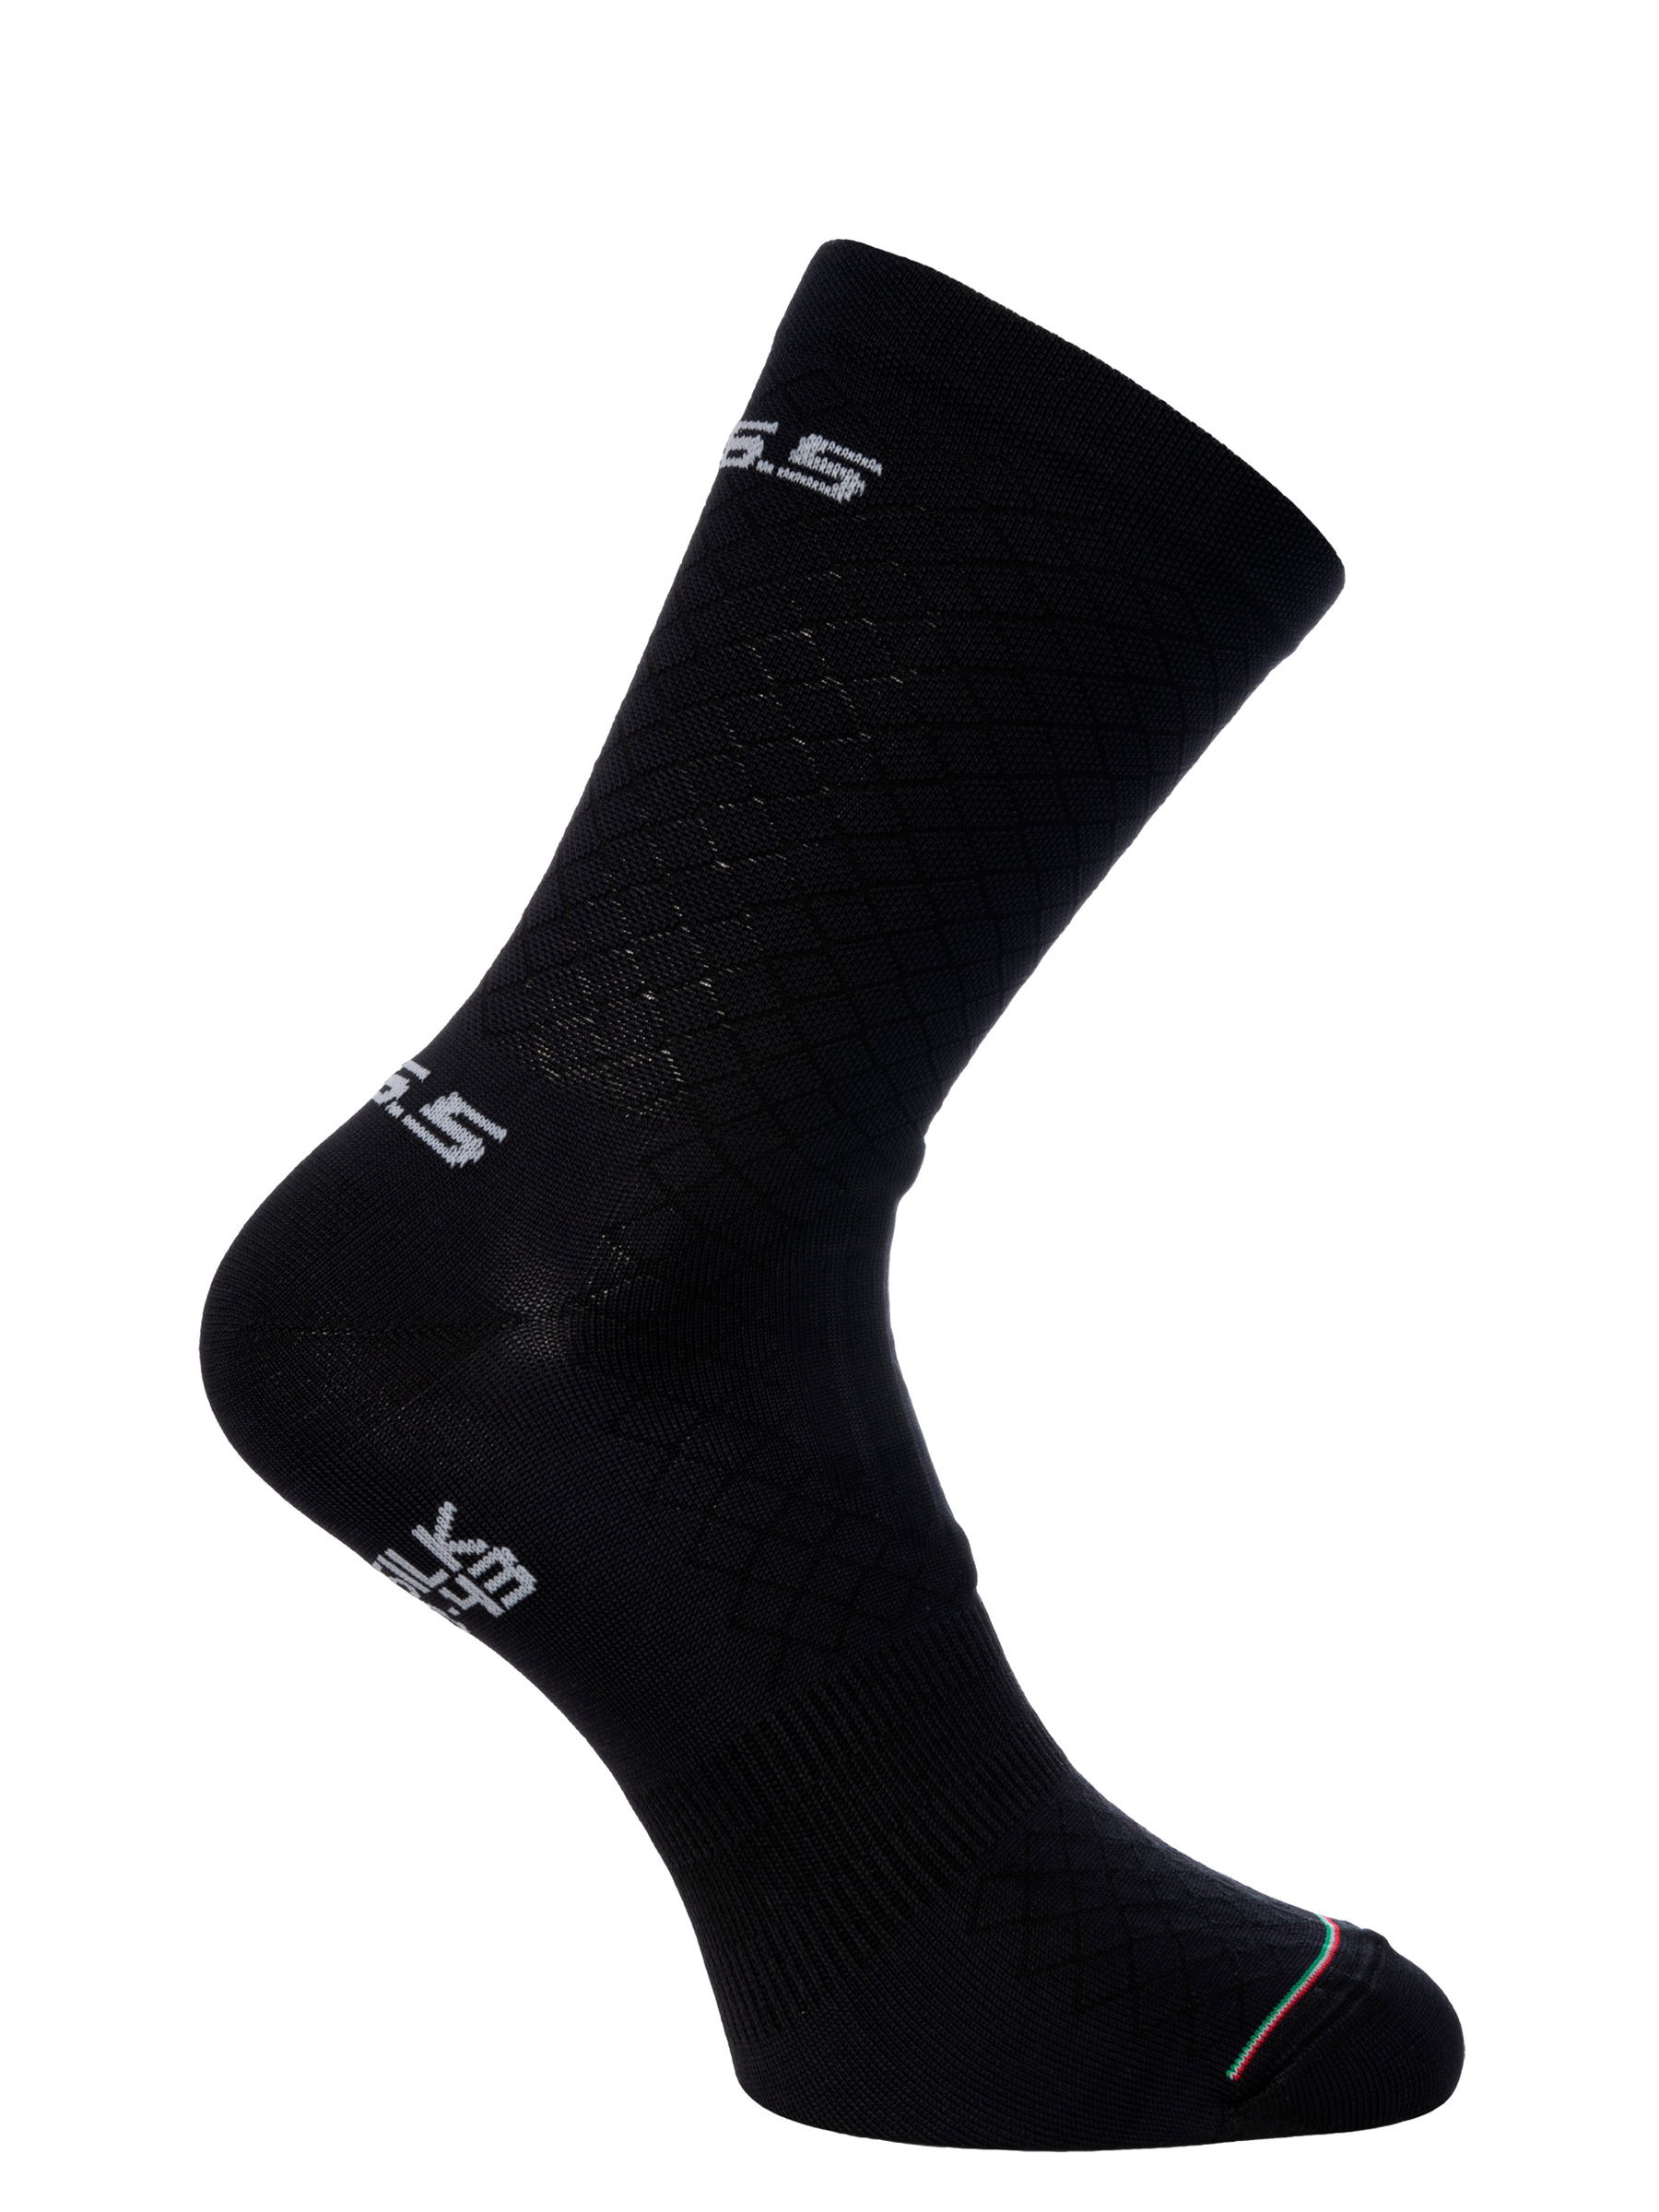 Cycling socks Leggera black Q36.5 - side